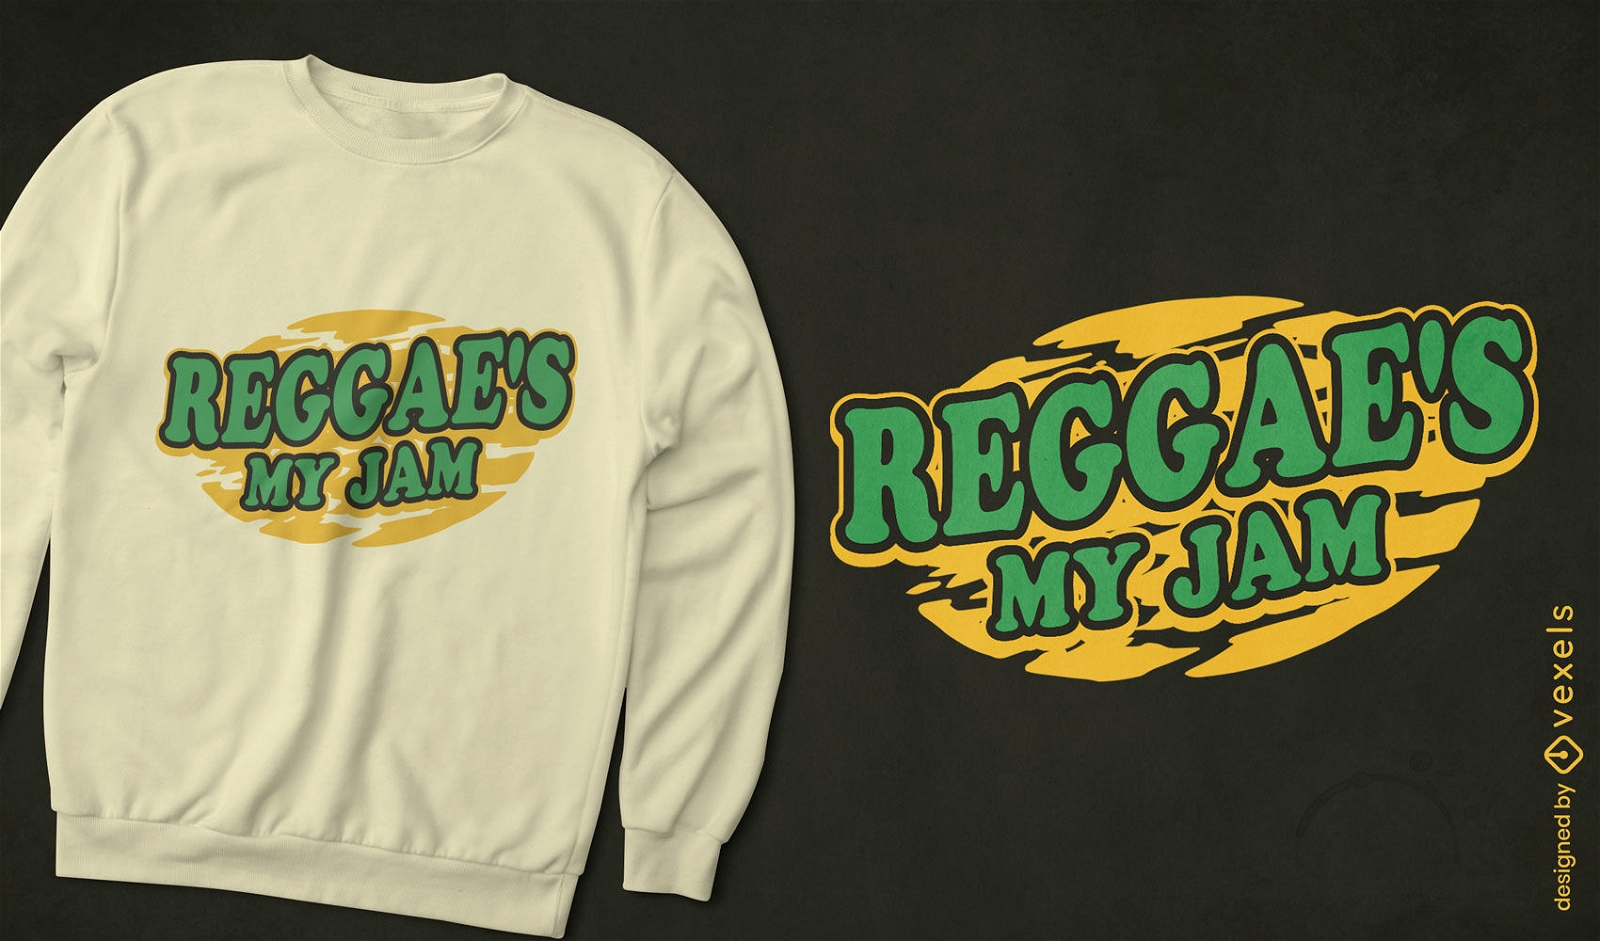 Diseño de camiseta de mermelada de música reggae.